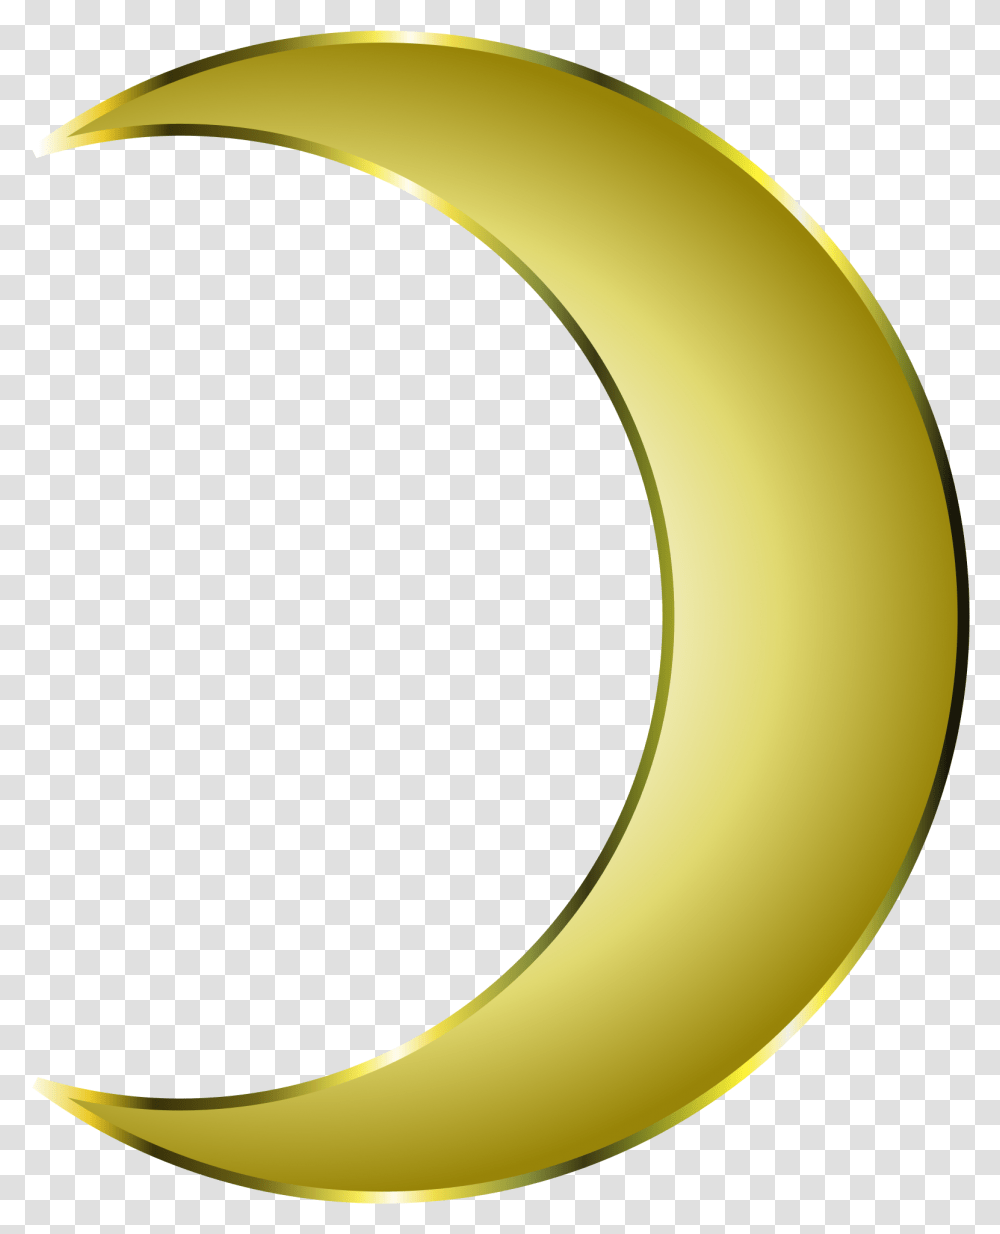 Clipart Moon Crescent Shape Golden Crescent Moon, Banana, Fruit, Plant, Food Transparent Png